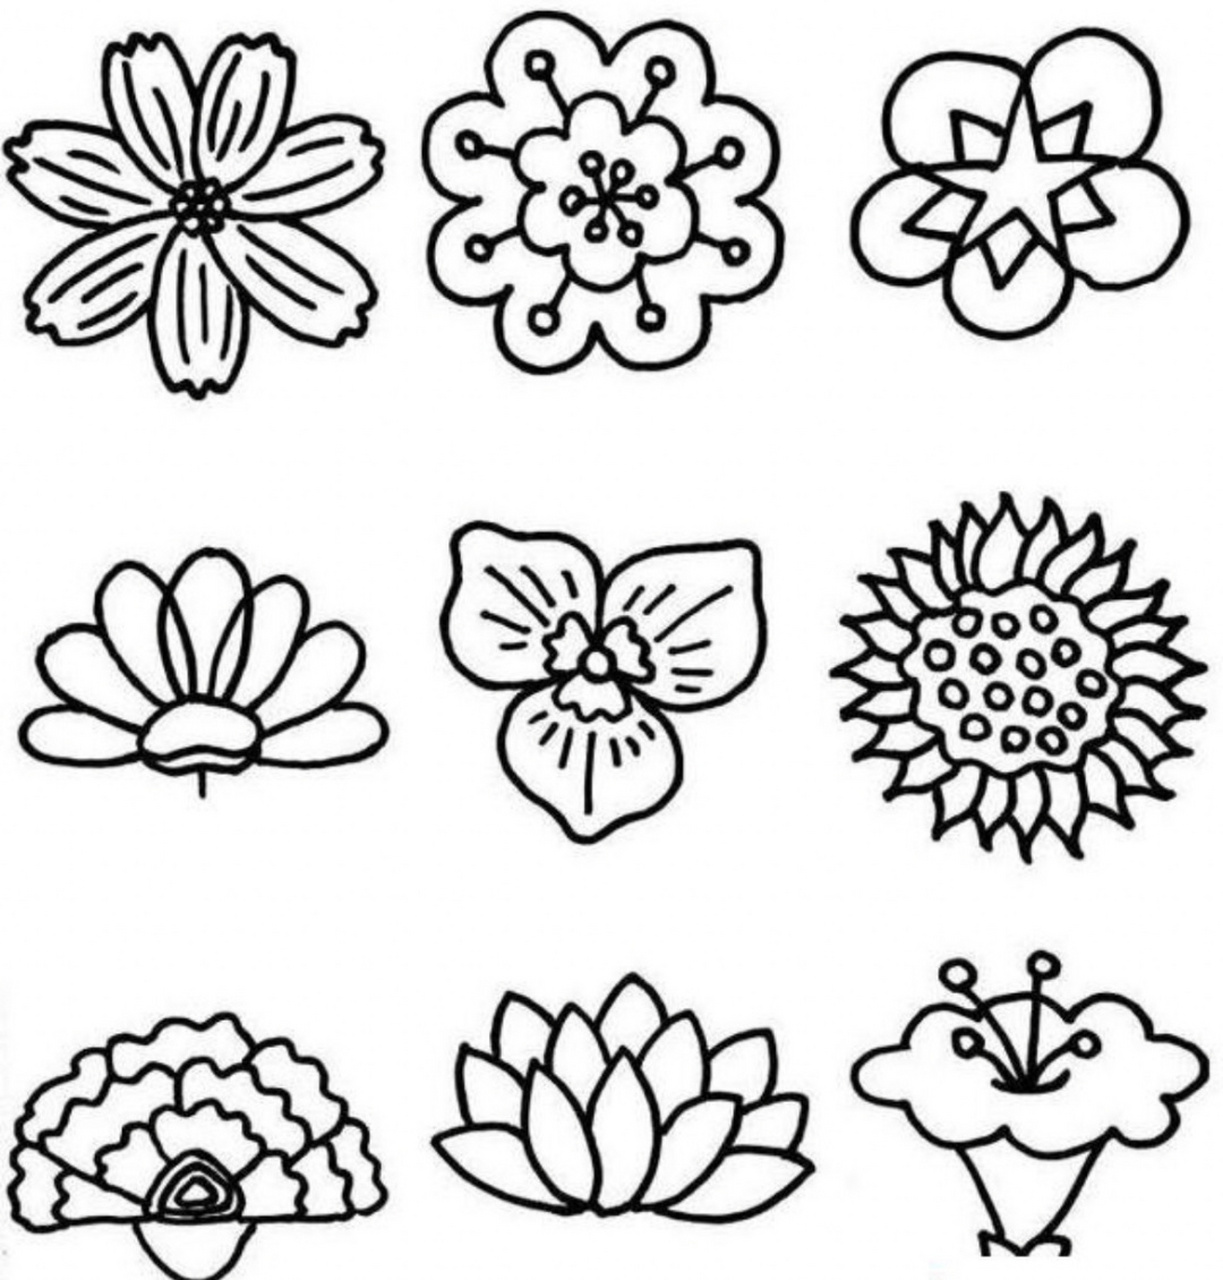 花朵简笔画/儿童画/创意美术 不同造型的花朵,可以用到很多不同的几何